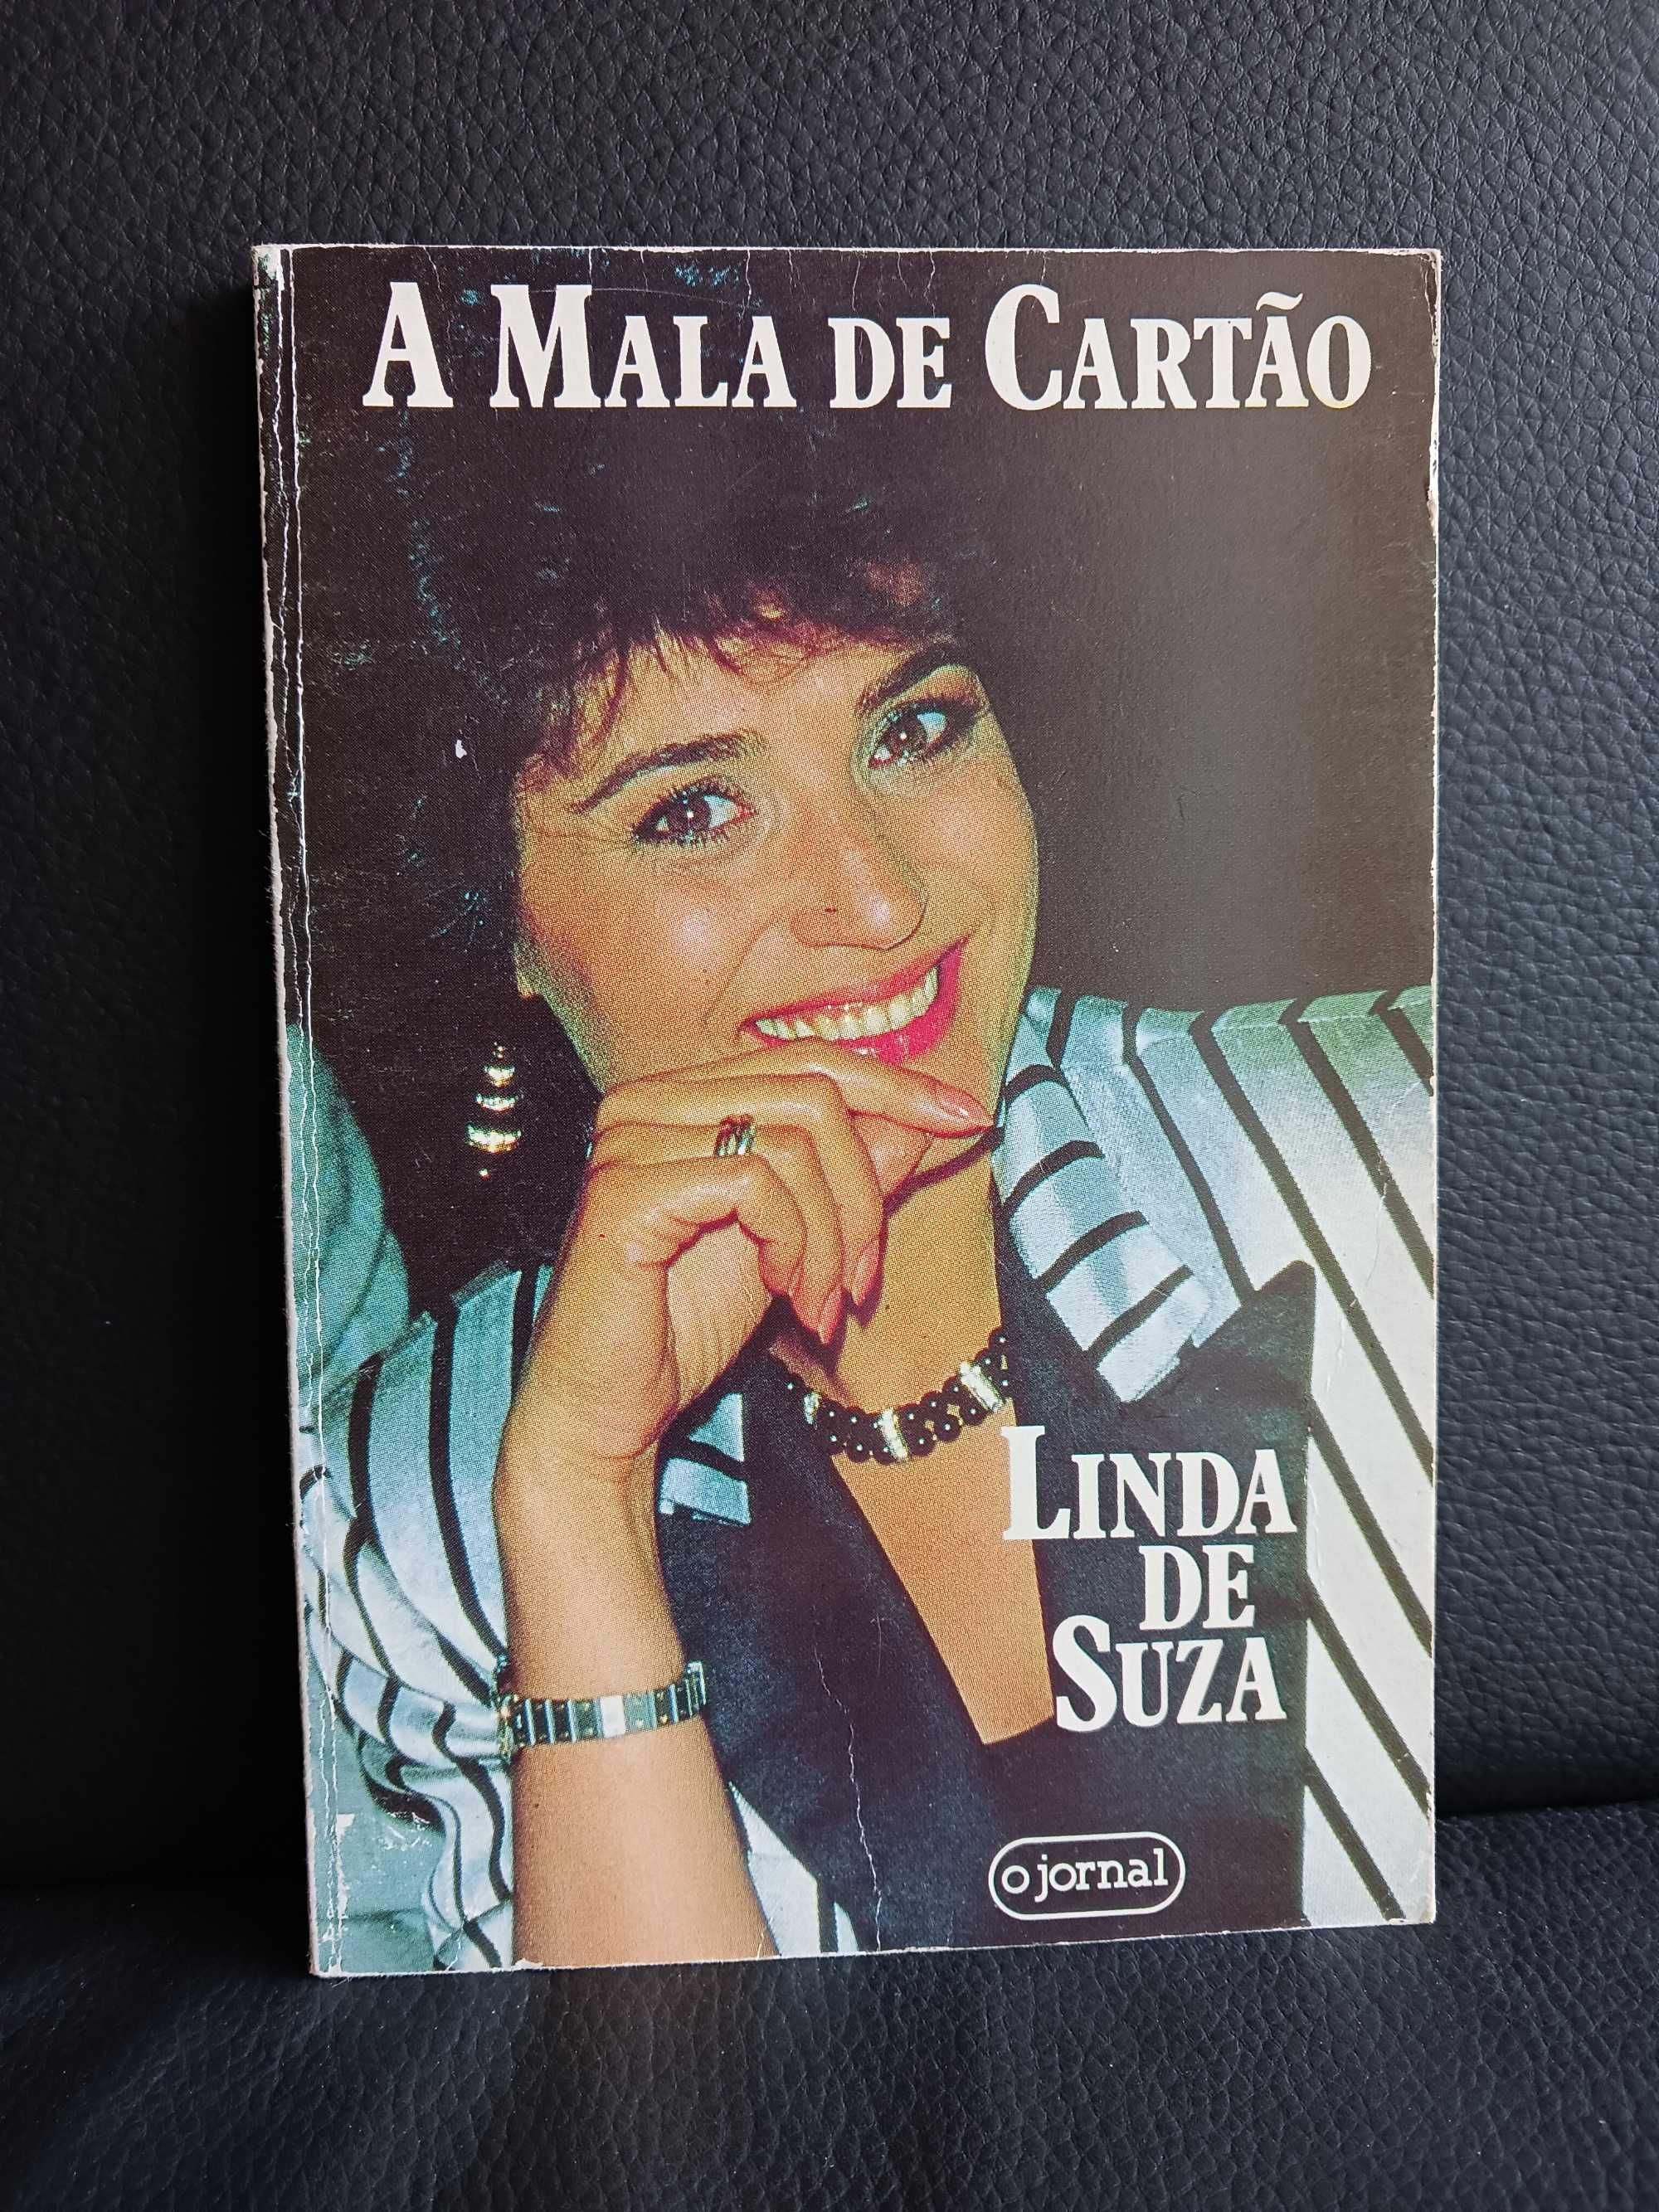 Livro ' A Mala de Cartão ' de Linda de Suza - Oferta dos portes